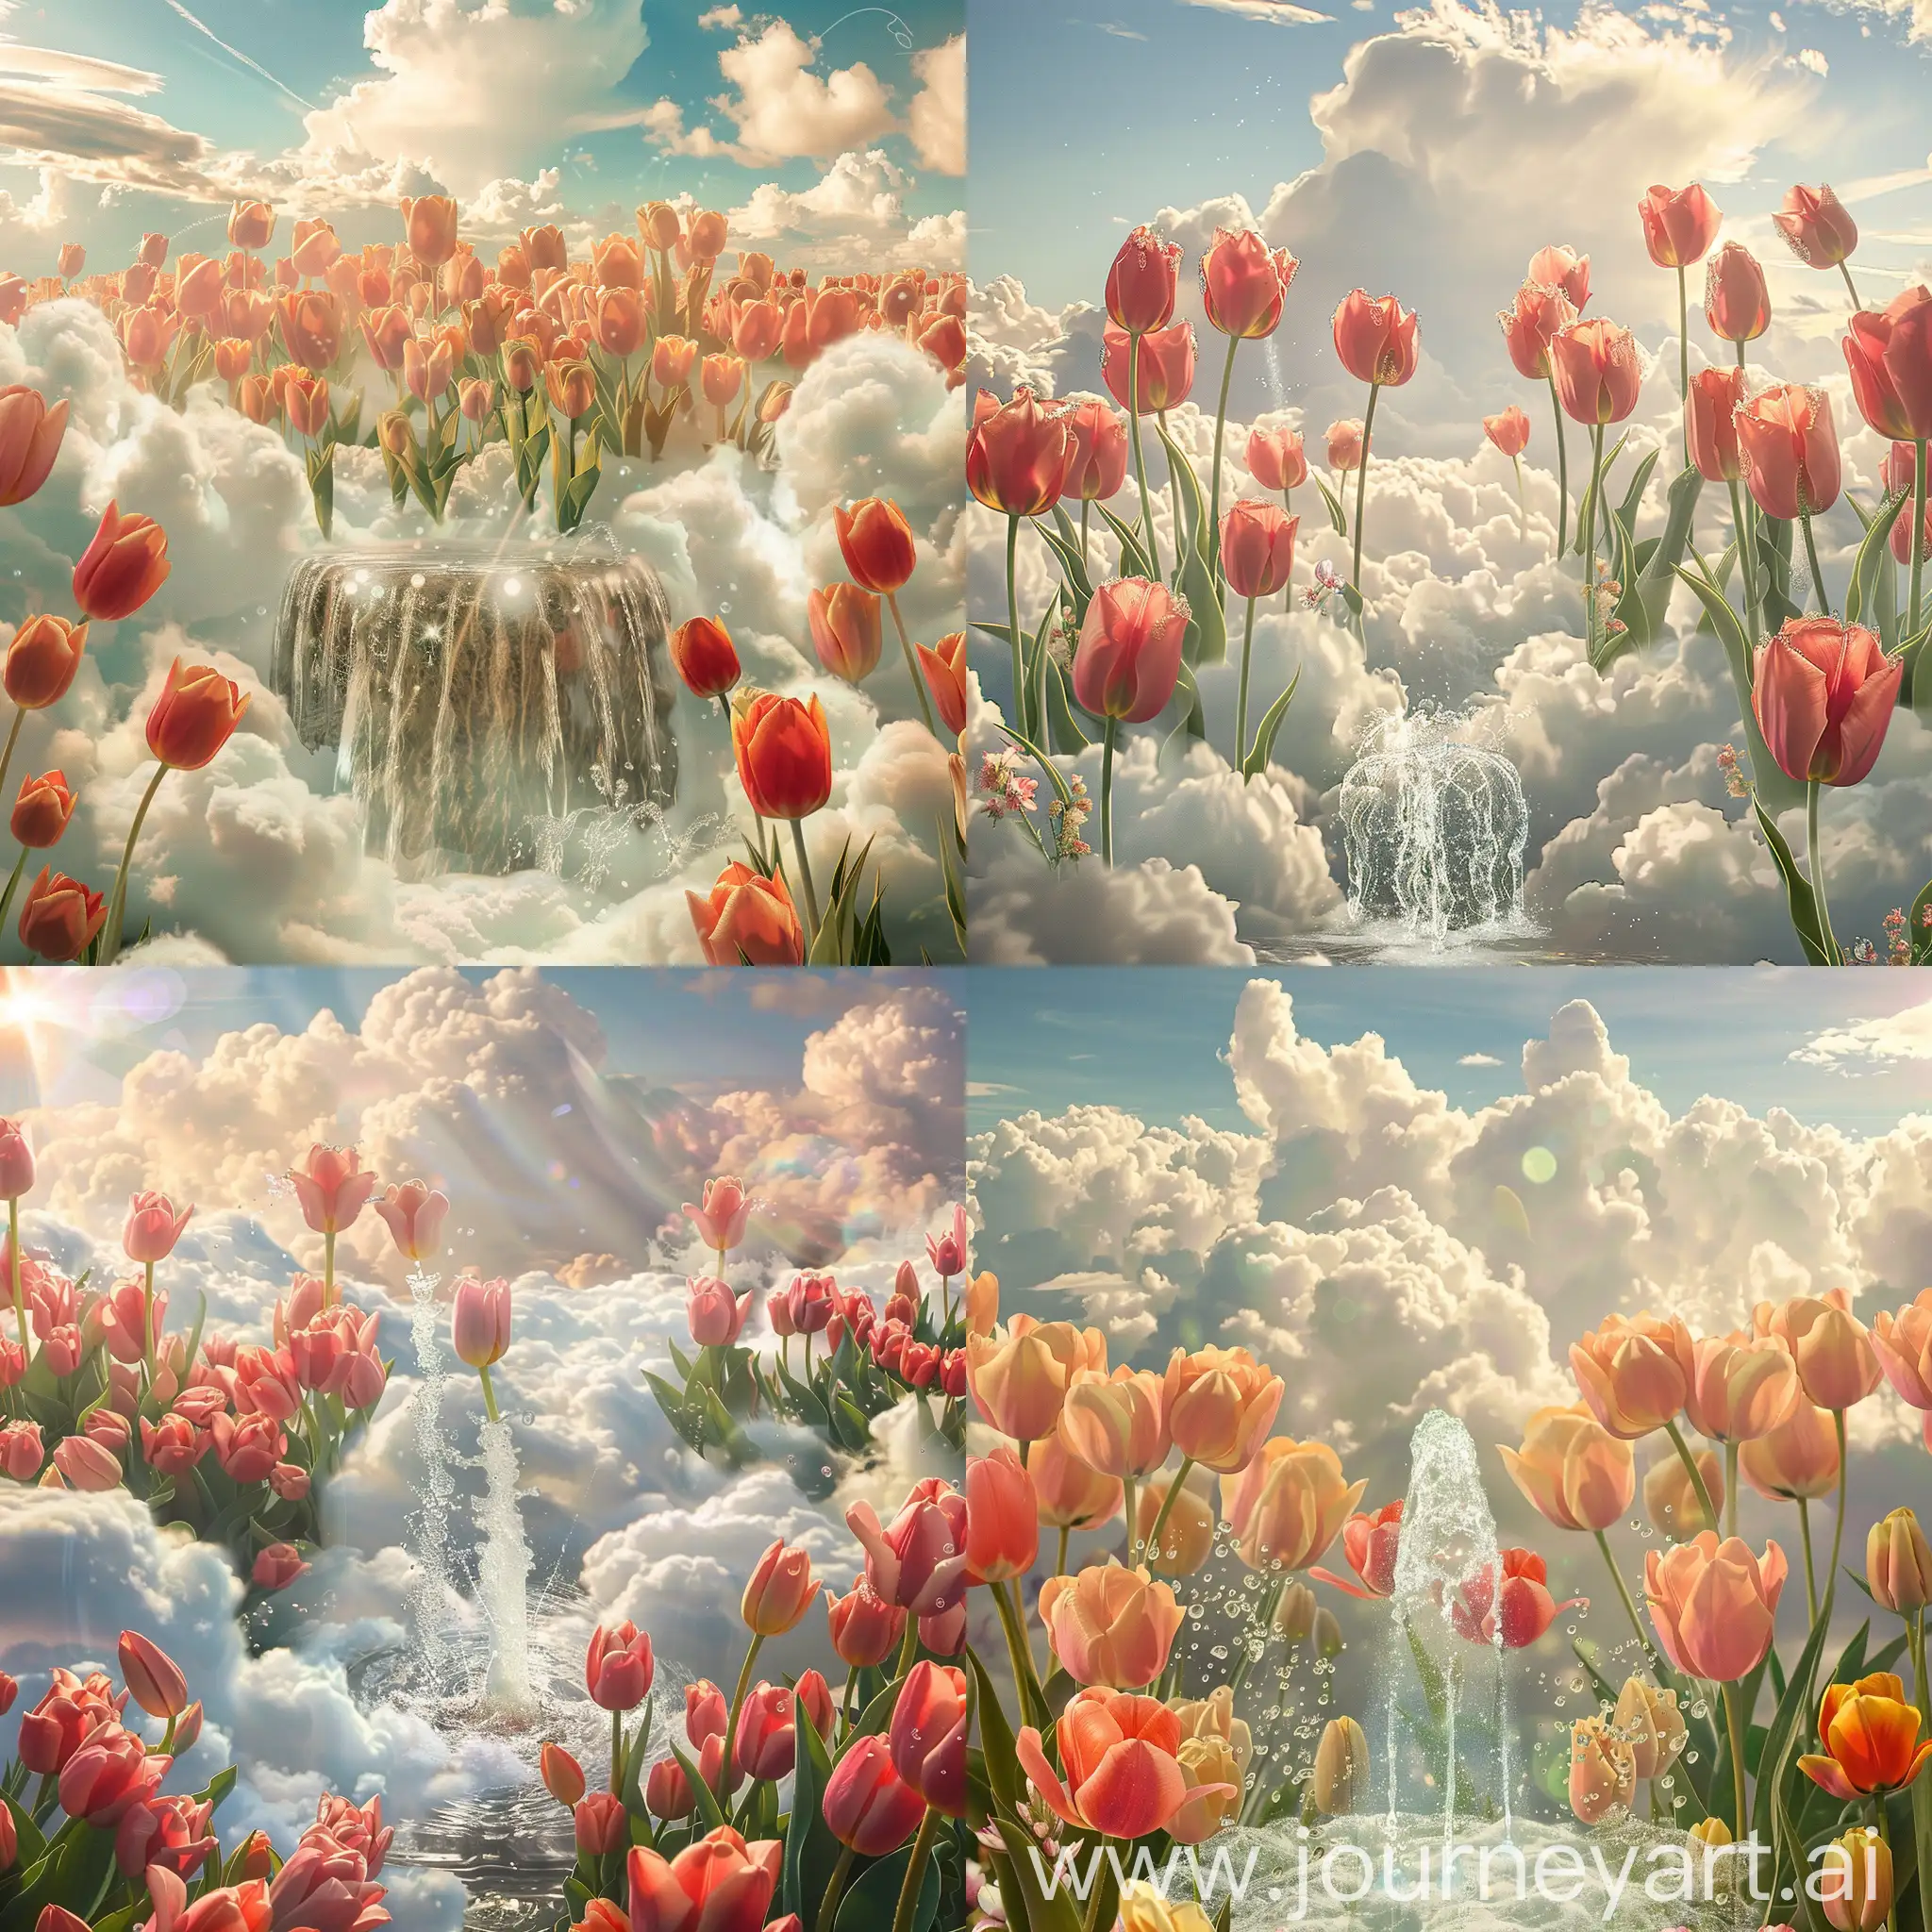 تصویری از گل های لاله که در آسمان و میان ابرهای قرار دارند و چشمه آب در میان لاله های وجود دارد